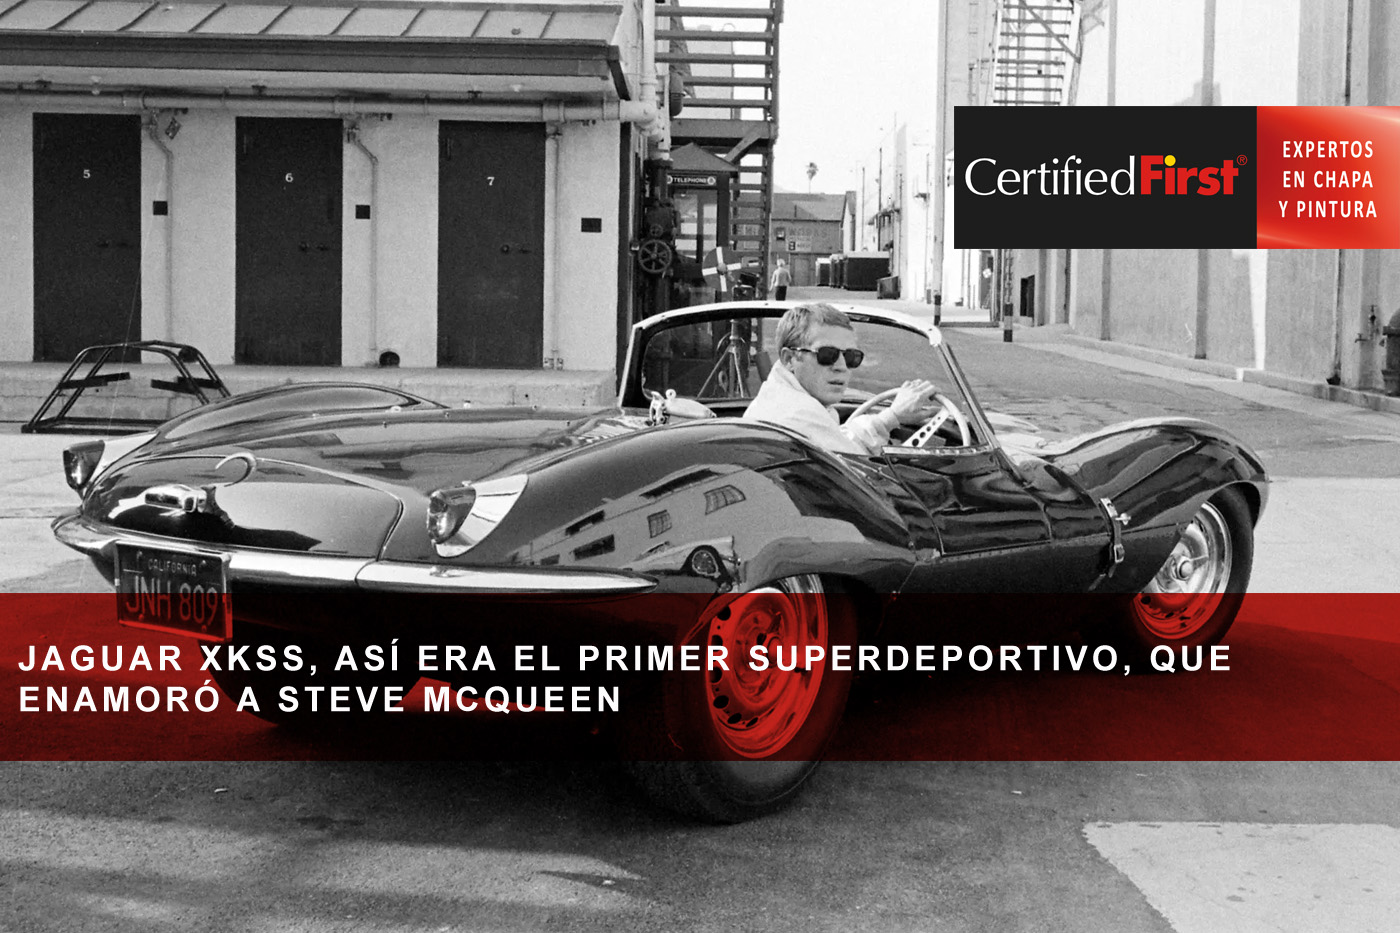 Jaguar XKSS, así era el primer superdeportivo, que enamoró a Steve McQueen